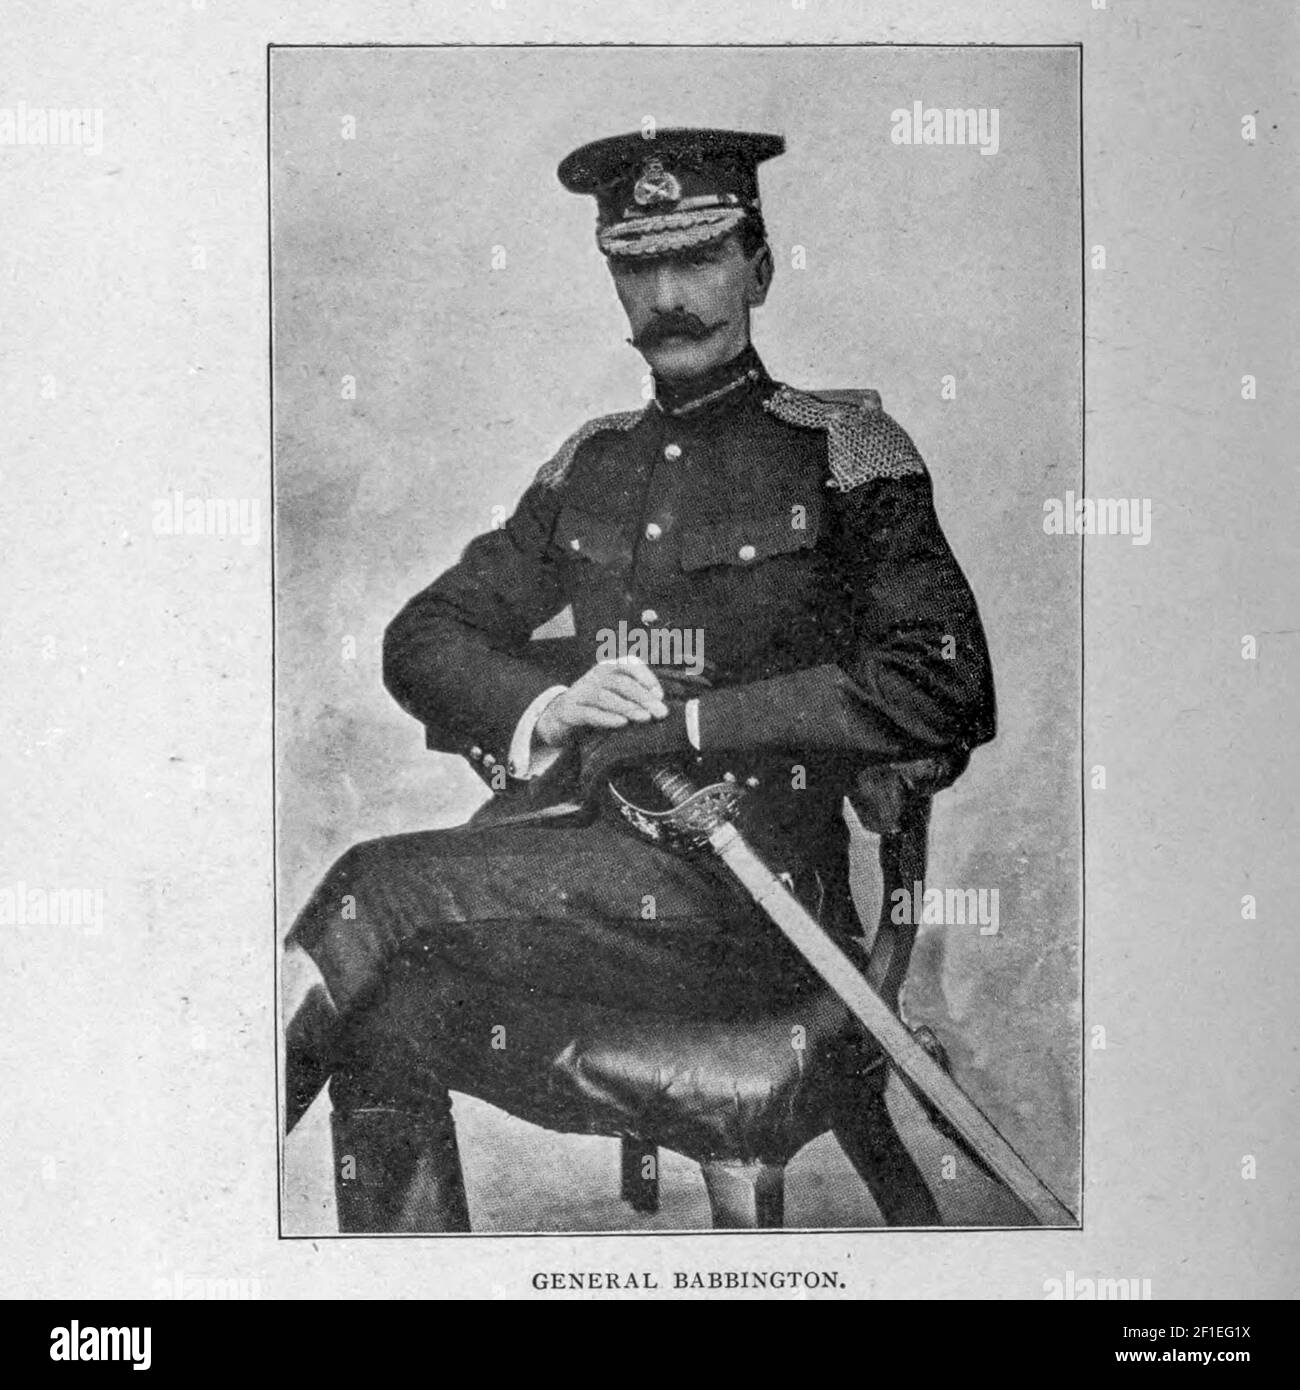 El Teniente General Sir James Melville Babington [aquí como Babbington] KCB, KCMG, DL (31 de julio de 1854 – 15 de junio de 1936) fue un oficial del Ejército Británico y un renombrado líder de caballería, haciendo un nombre para sí mismo por sus acciones en la Segunda Guerra del Bóer. Fue Comandante de la Fuerza de Defensa de Nueva Zelanda y uno de los generales británicos más respetados en la primera Guerra Mundial, al mando de la División 23rd. Después de la guerra fue Comandante de las Fuerzas Británicas en Italia. La imagen del General Babington fue elegida por Paul McCartney y utilizada por los Beatles para representar el 'SGT ficticio. Pepper' para el álbum Sgt. Pimienta' Foto de stock